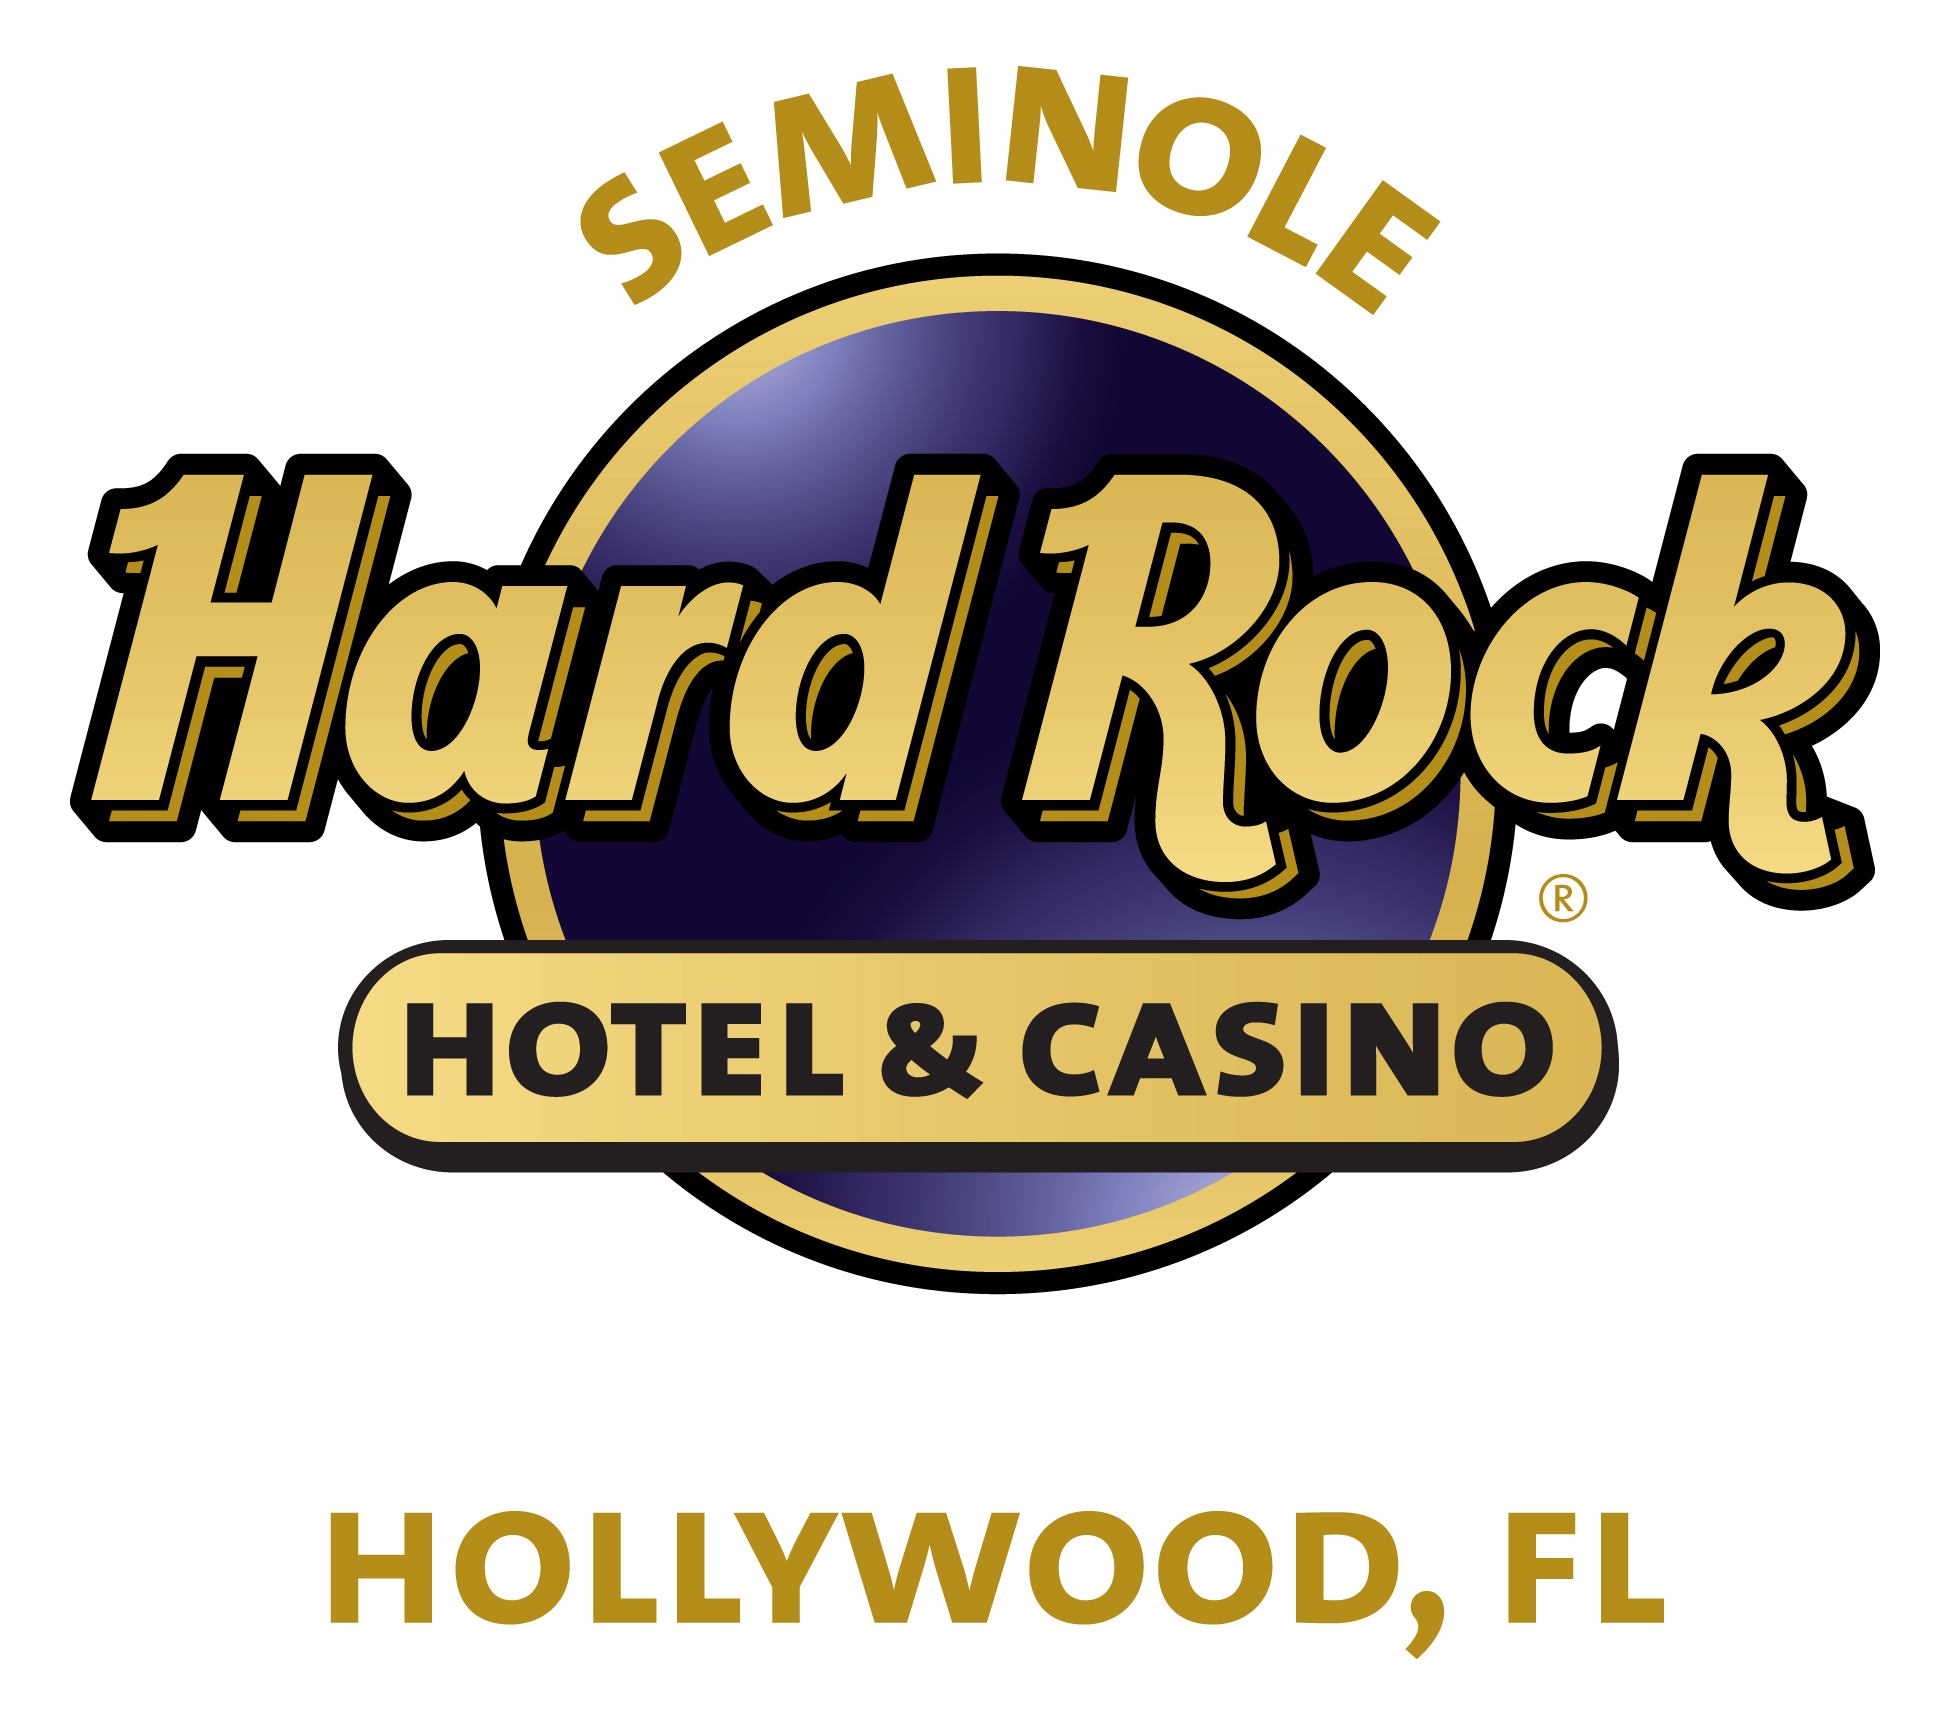 hard rock casino seminole perks